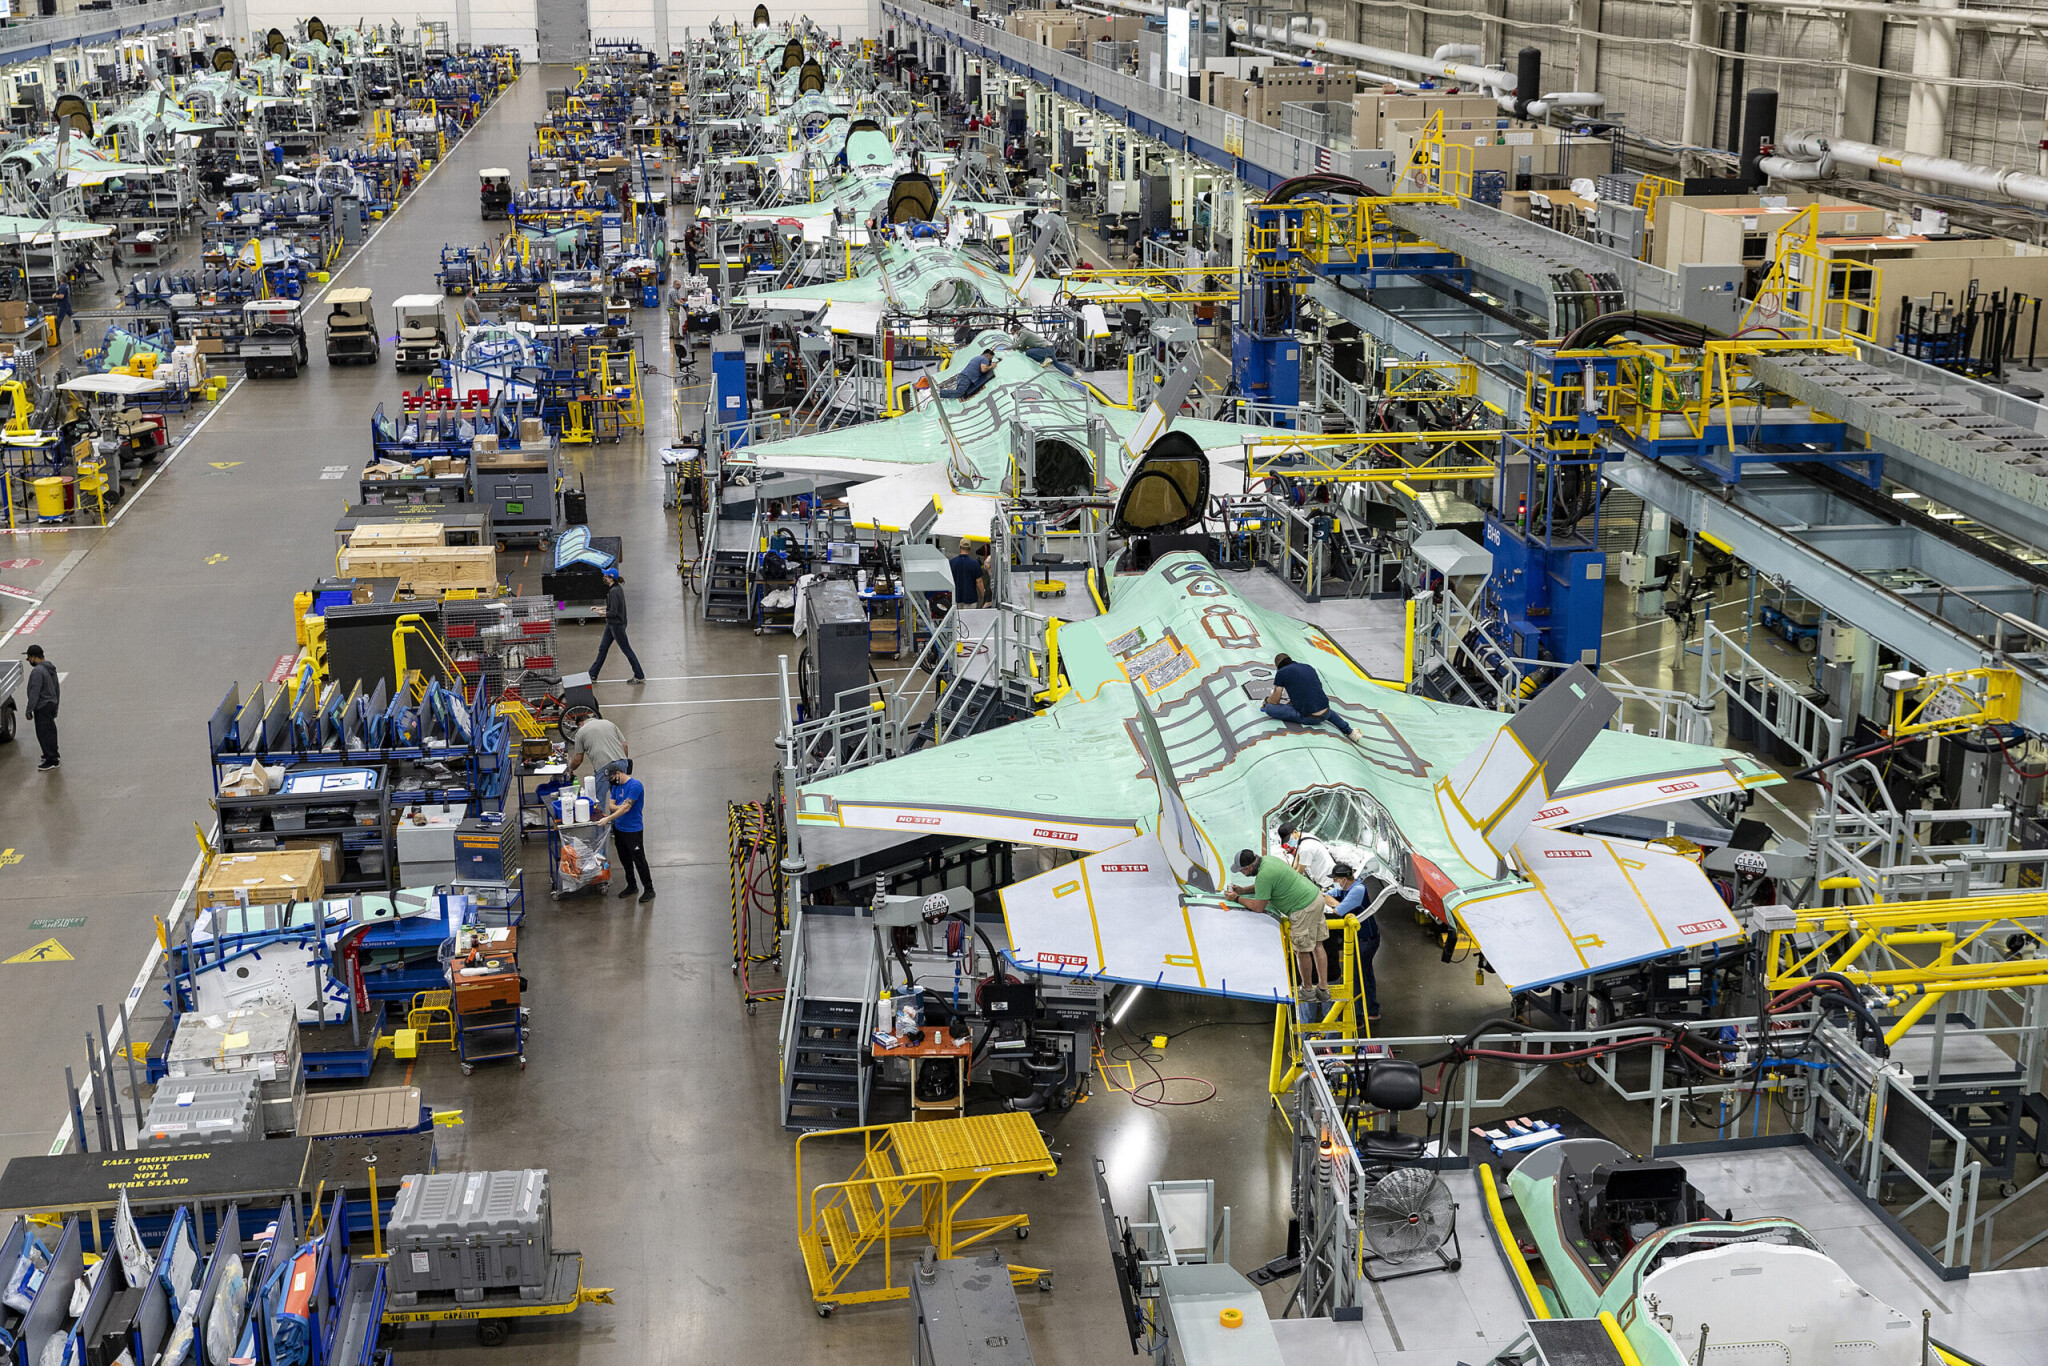 Letouny F-35 místo gripenů? Zástupci Lockheed Martin jednají o spolupráci v Česku